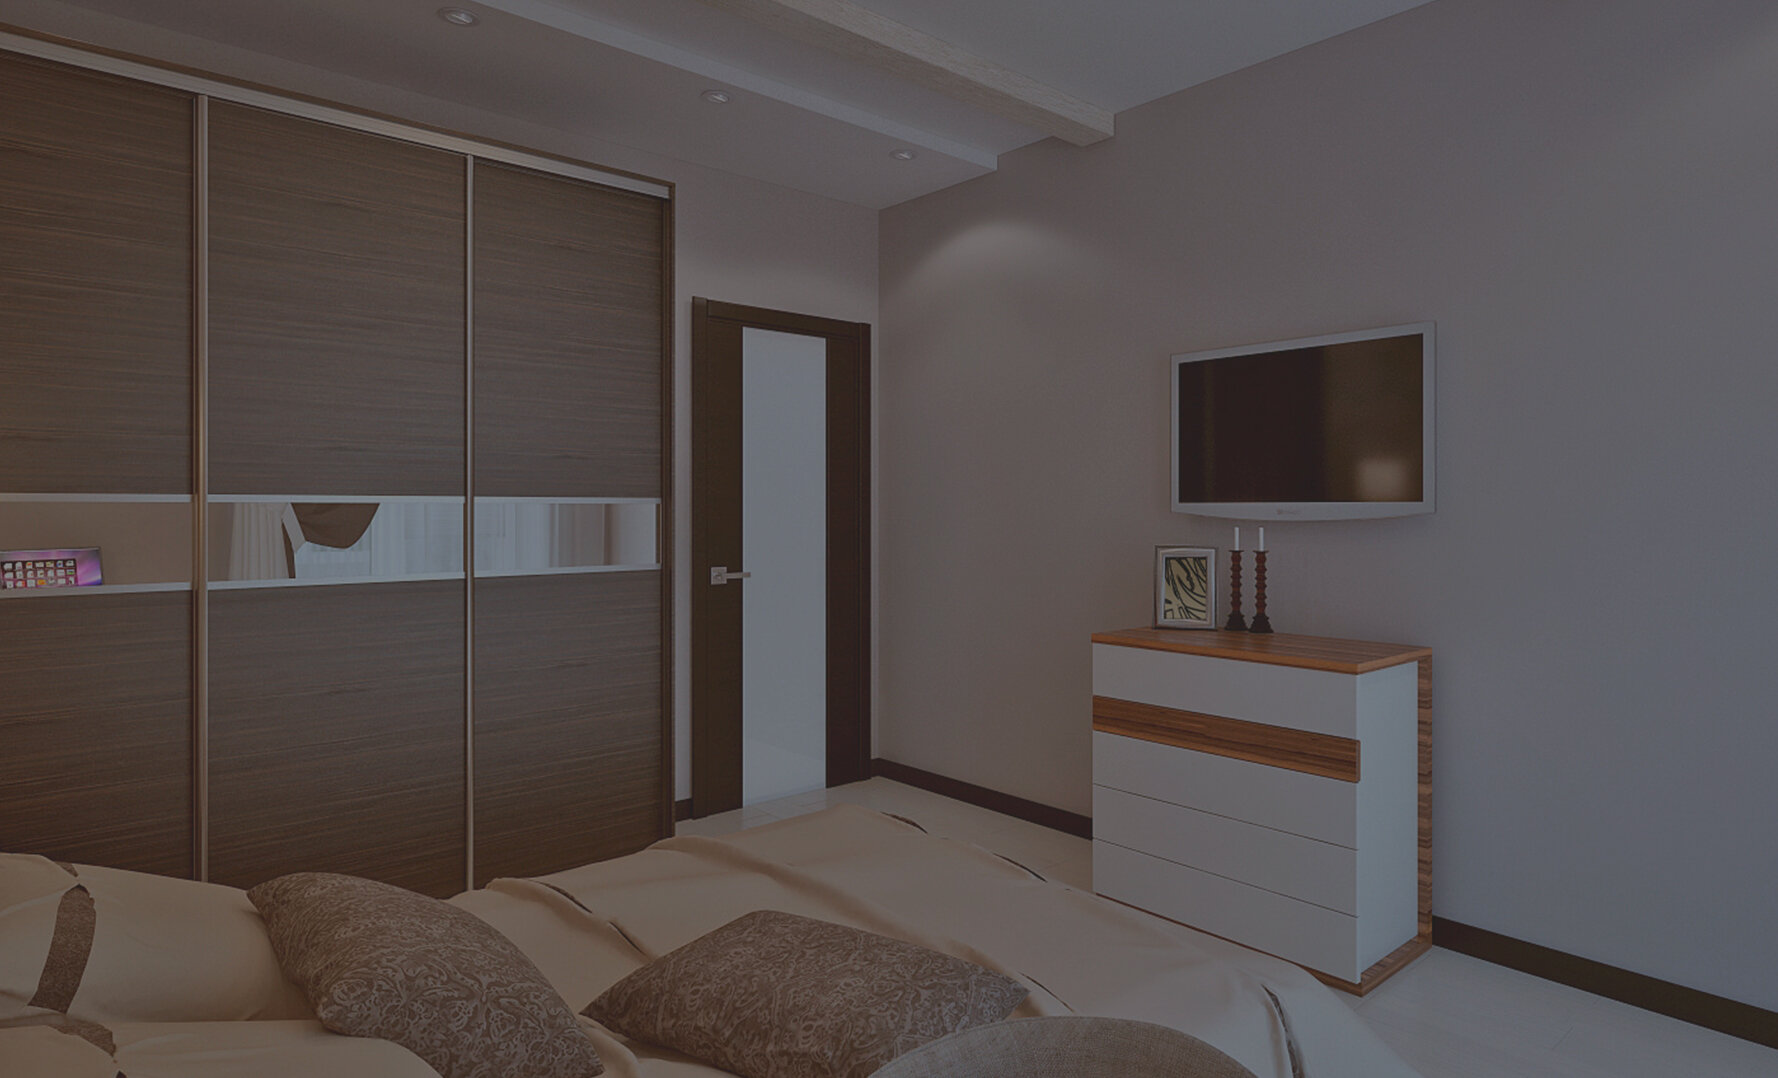 Дизайн спальни в двухкомнатной квартире панельного дома